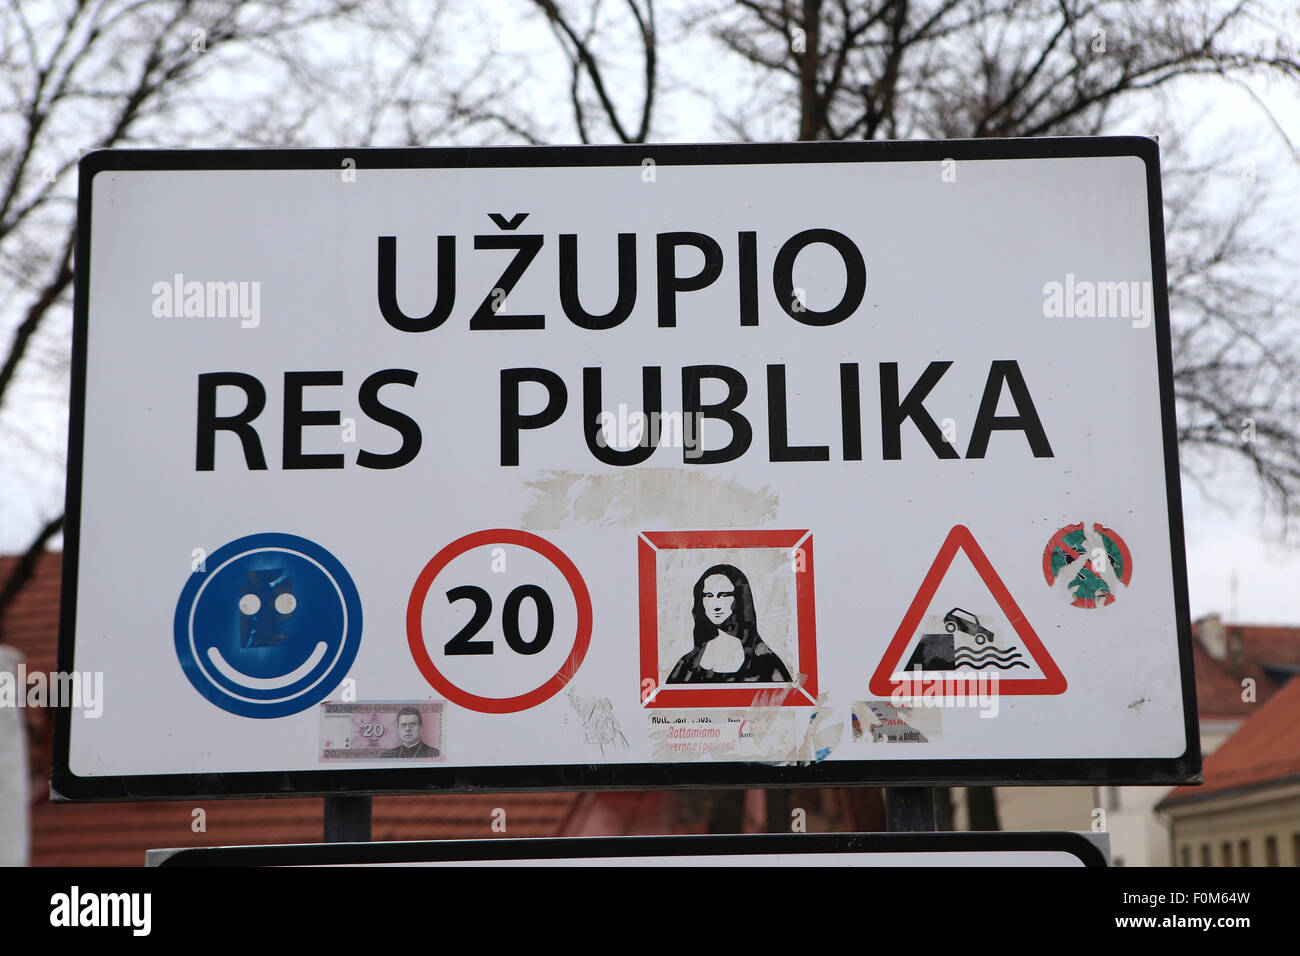 République d'Uzupis (UZUPIO RES PUBLIKA).Vilnius,Lituanie,Europe Banque D'Images